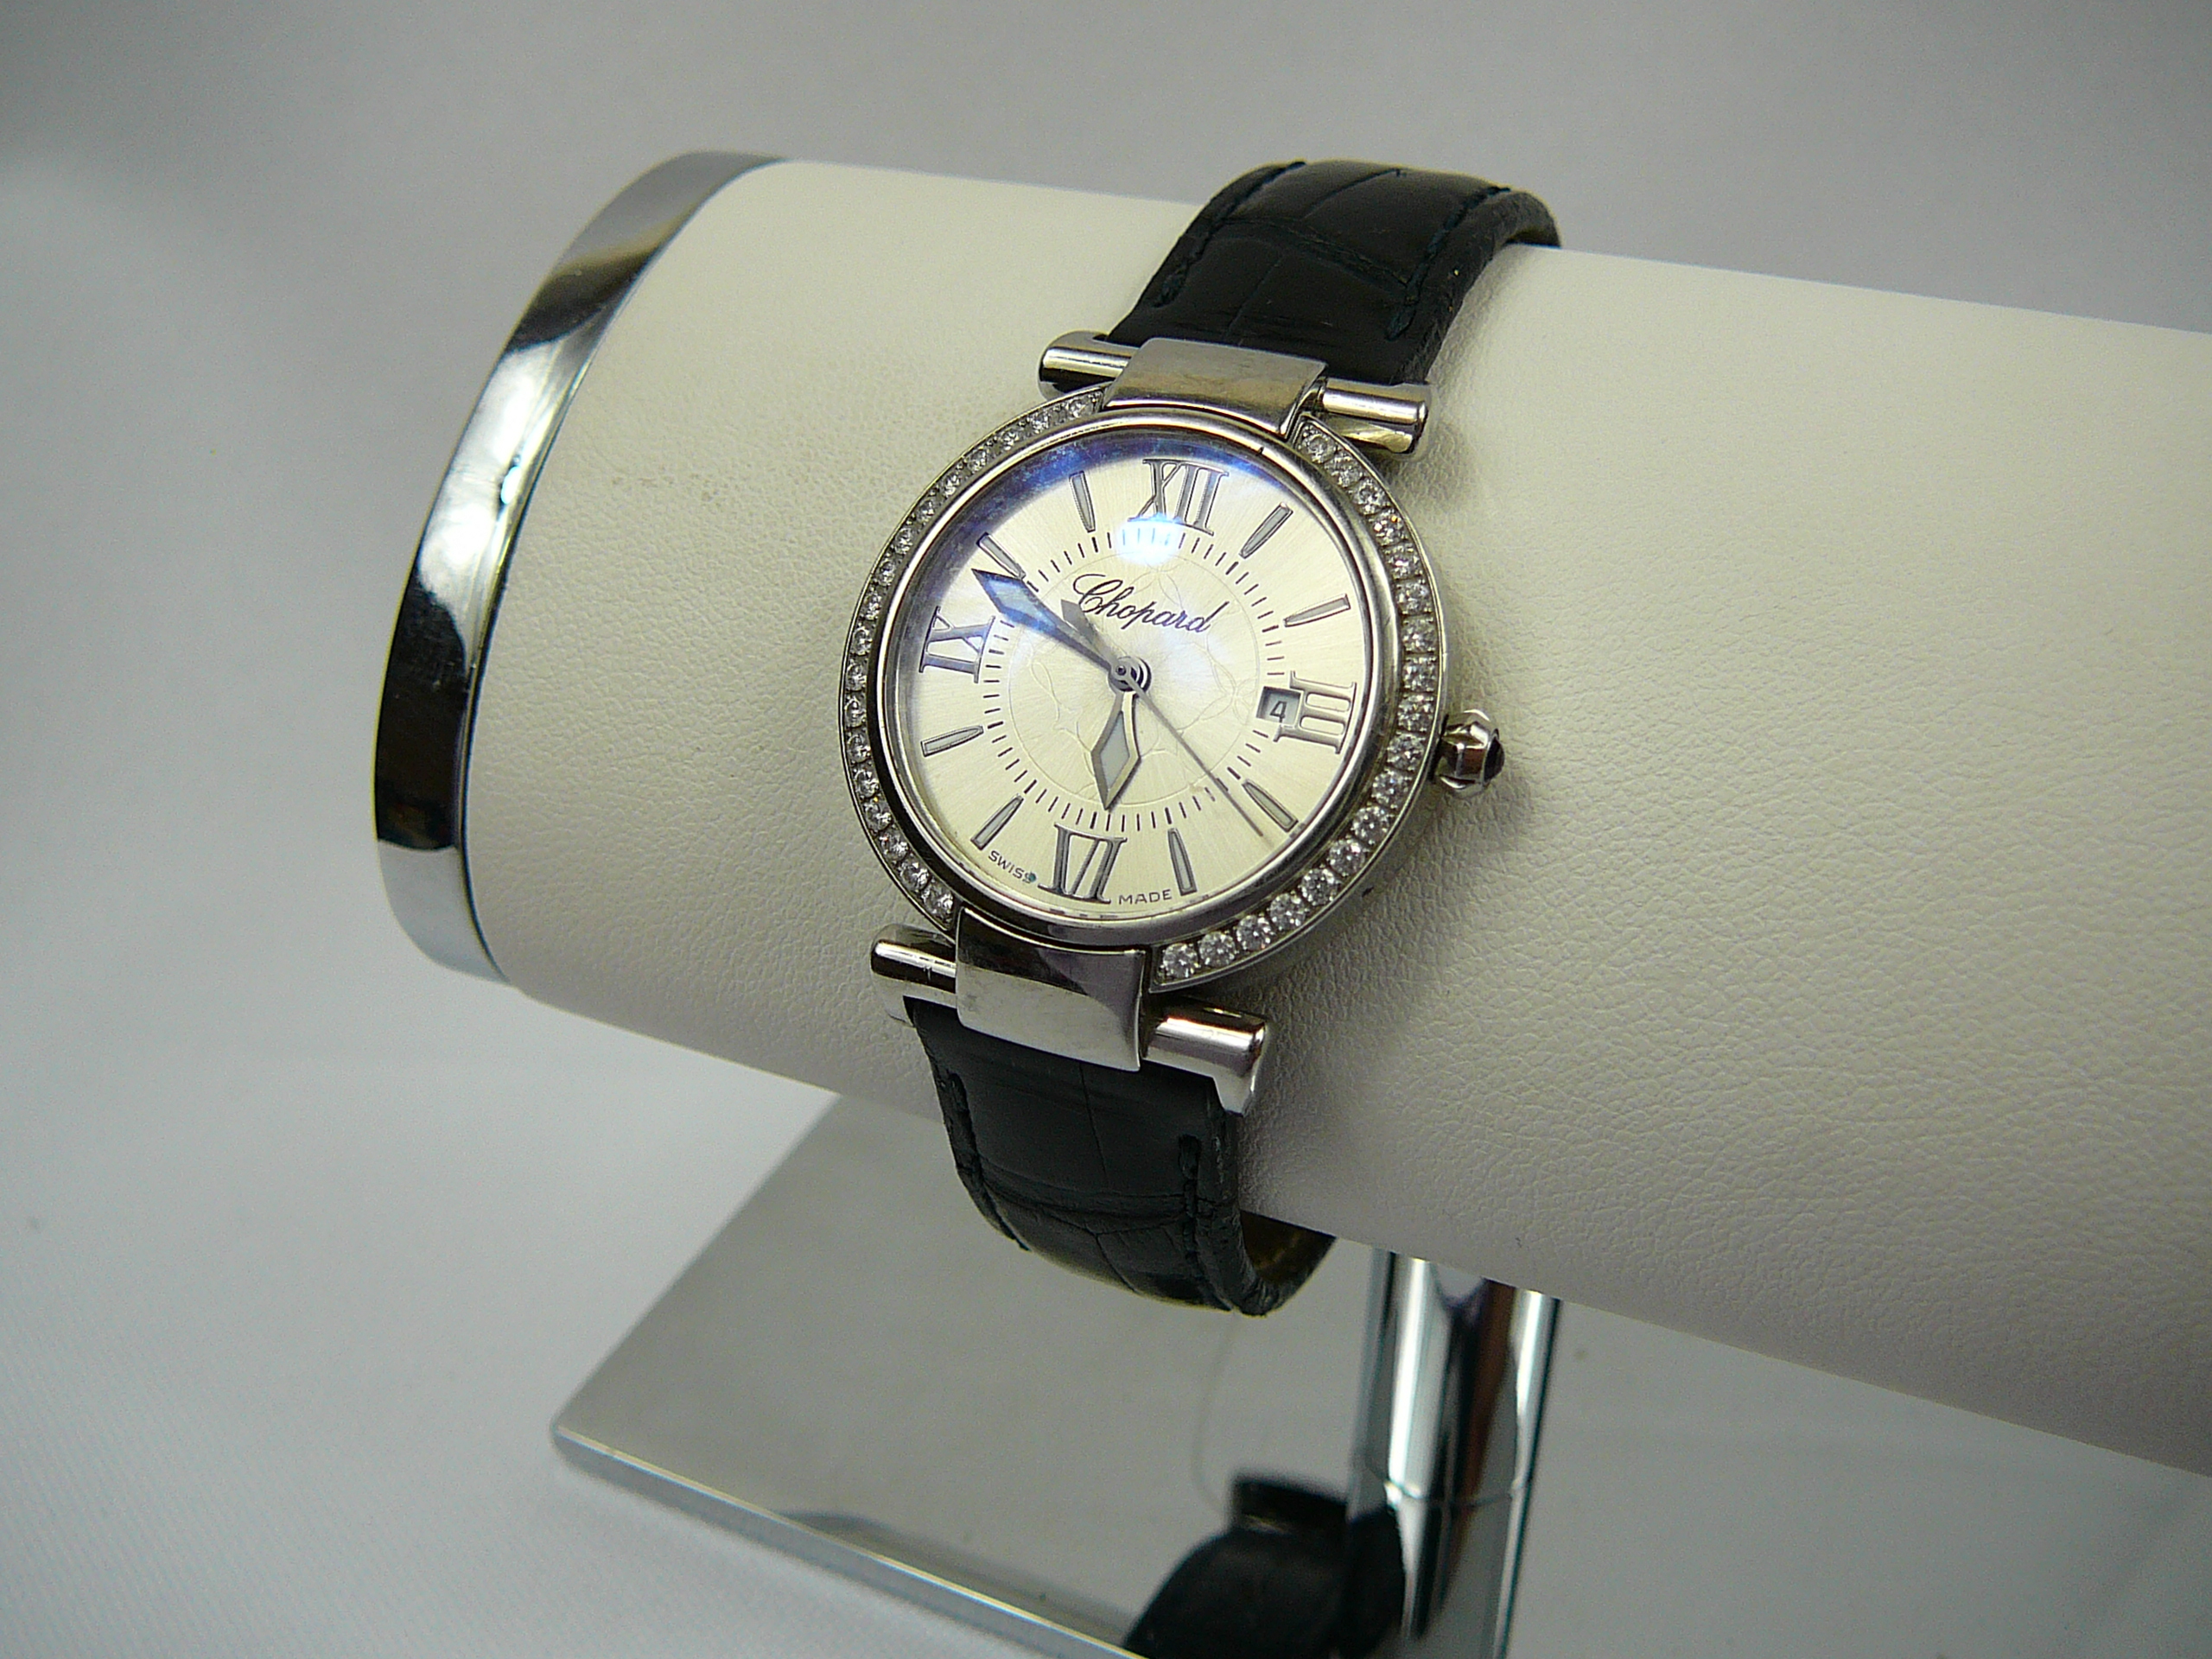 Ladies Chopard wrist watch